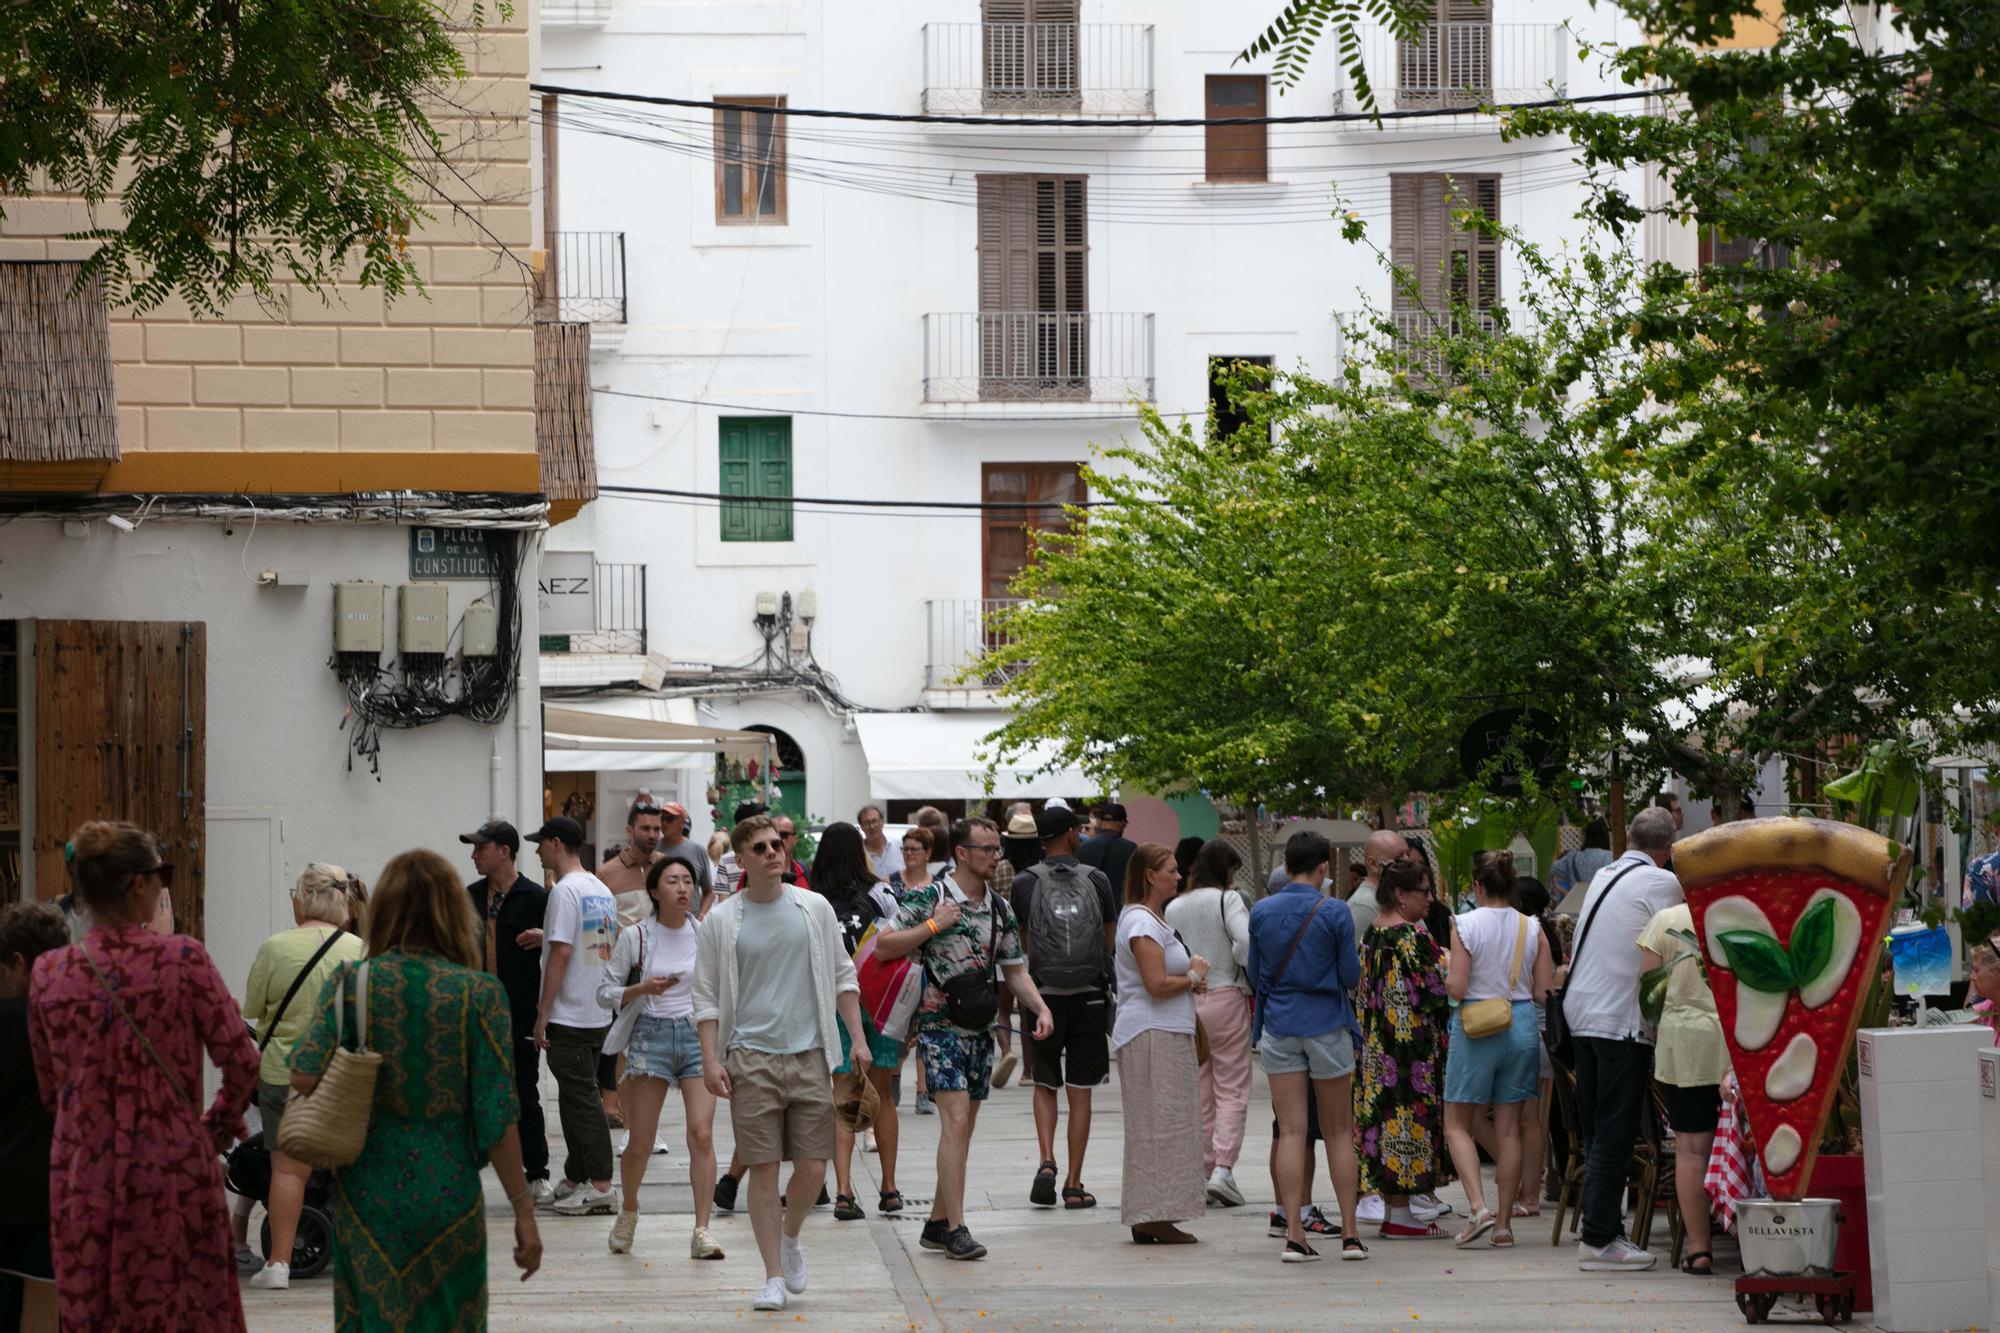 Galería de imágenes de la masificación de turistas en la ciudad de Ibiza a principios de junio